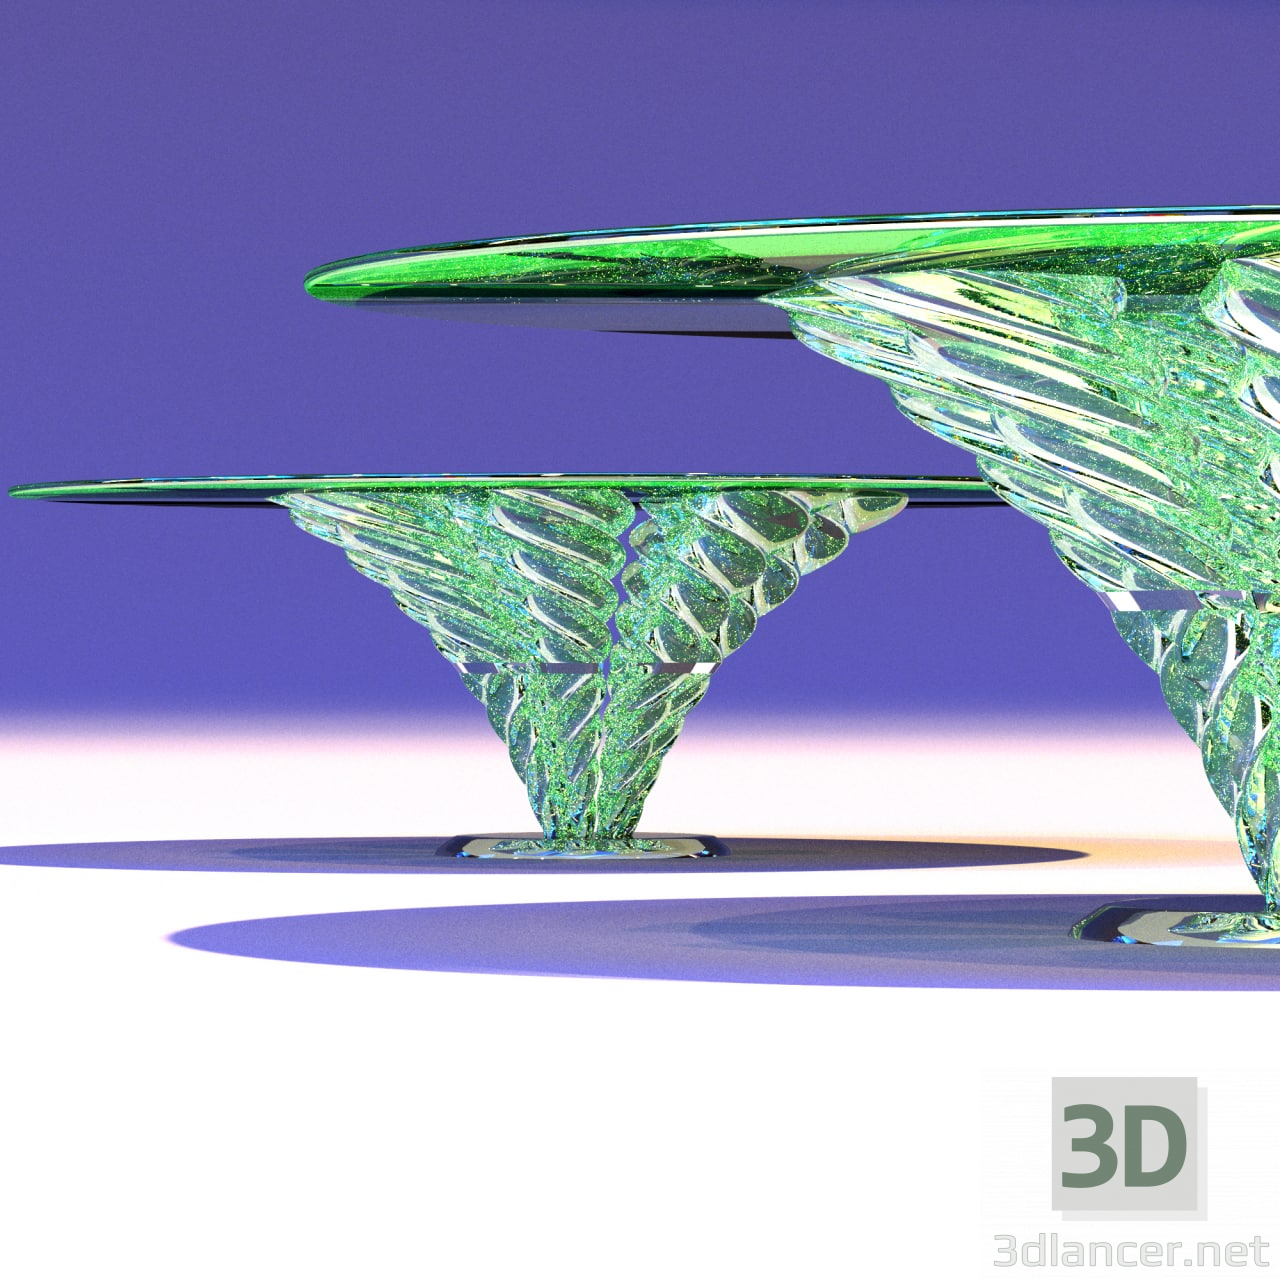 Tisch aus Glas 3D-Modell kaufen - Rendern